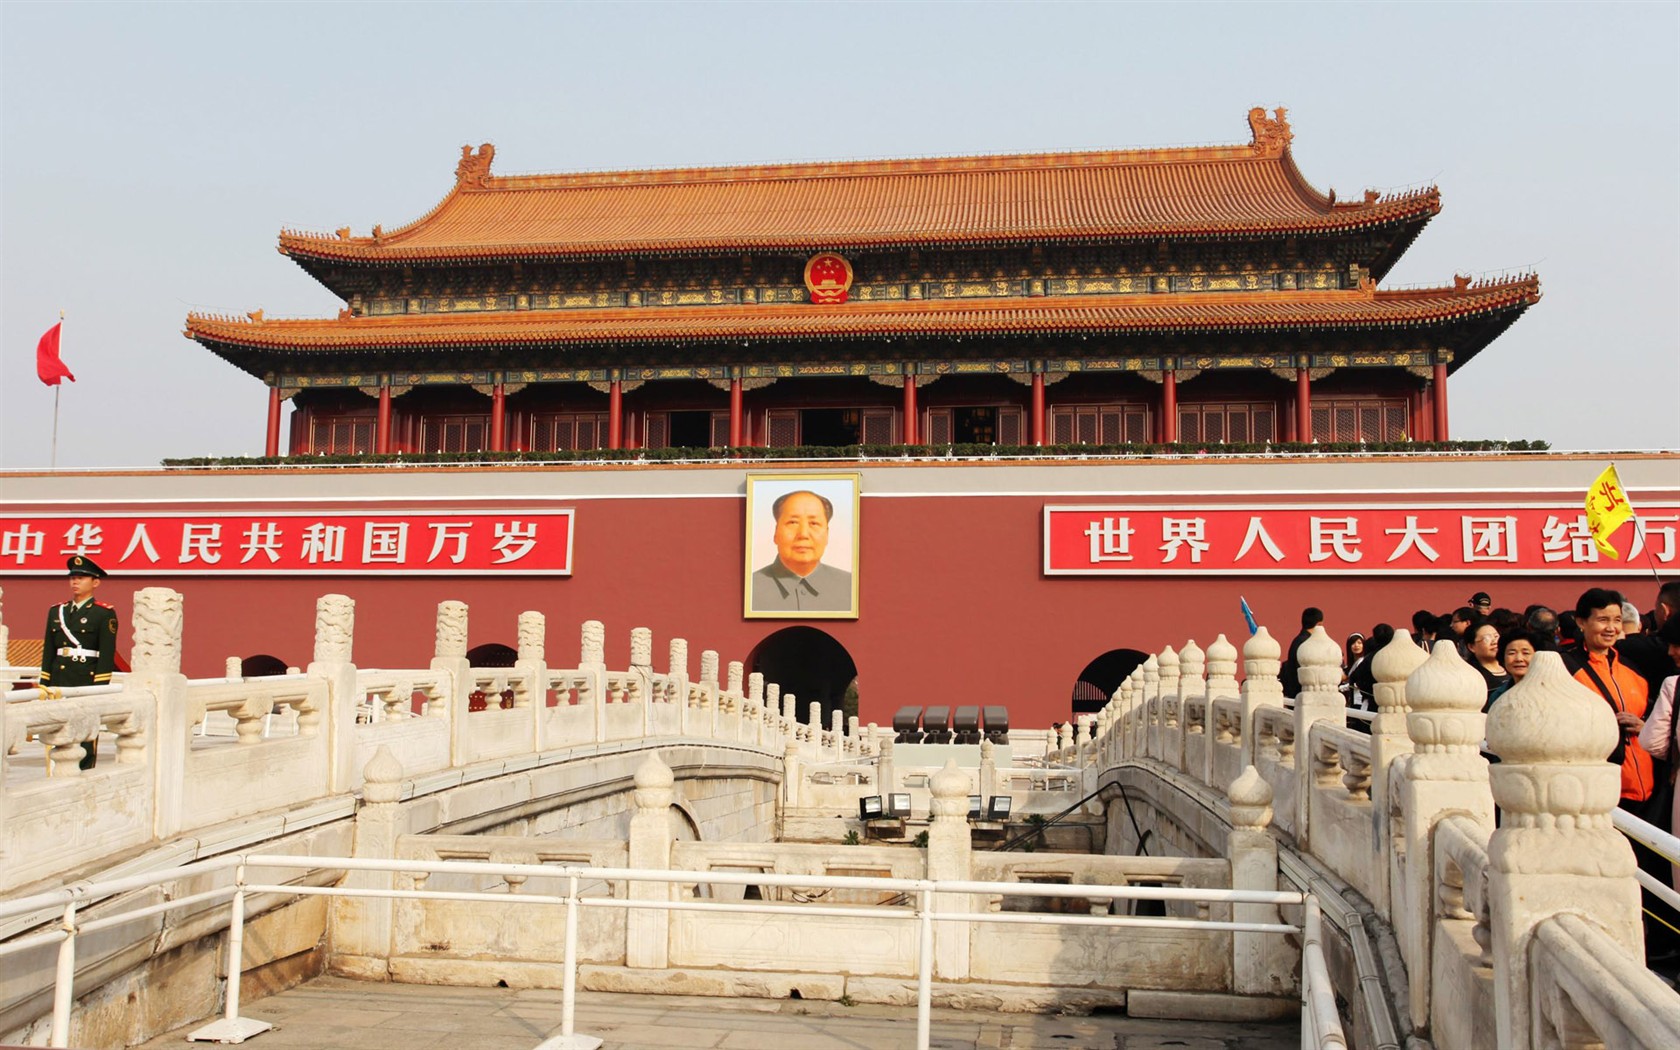 Tour Beijing - Platz des Himmlischen Friedens (GGC Werke) #1 - 1680x1050